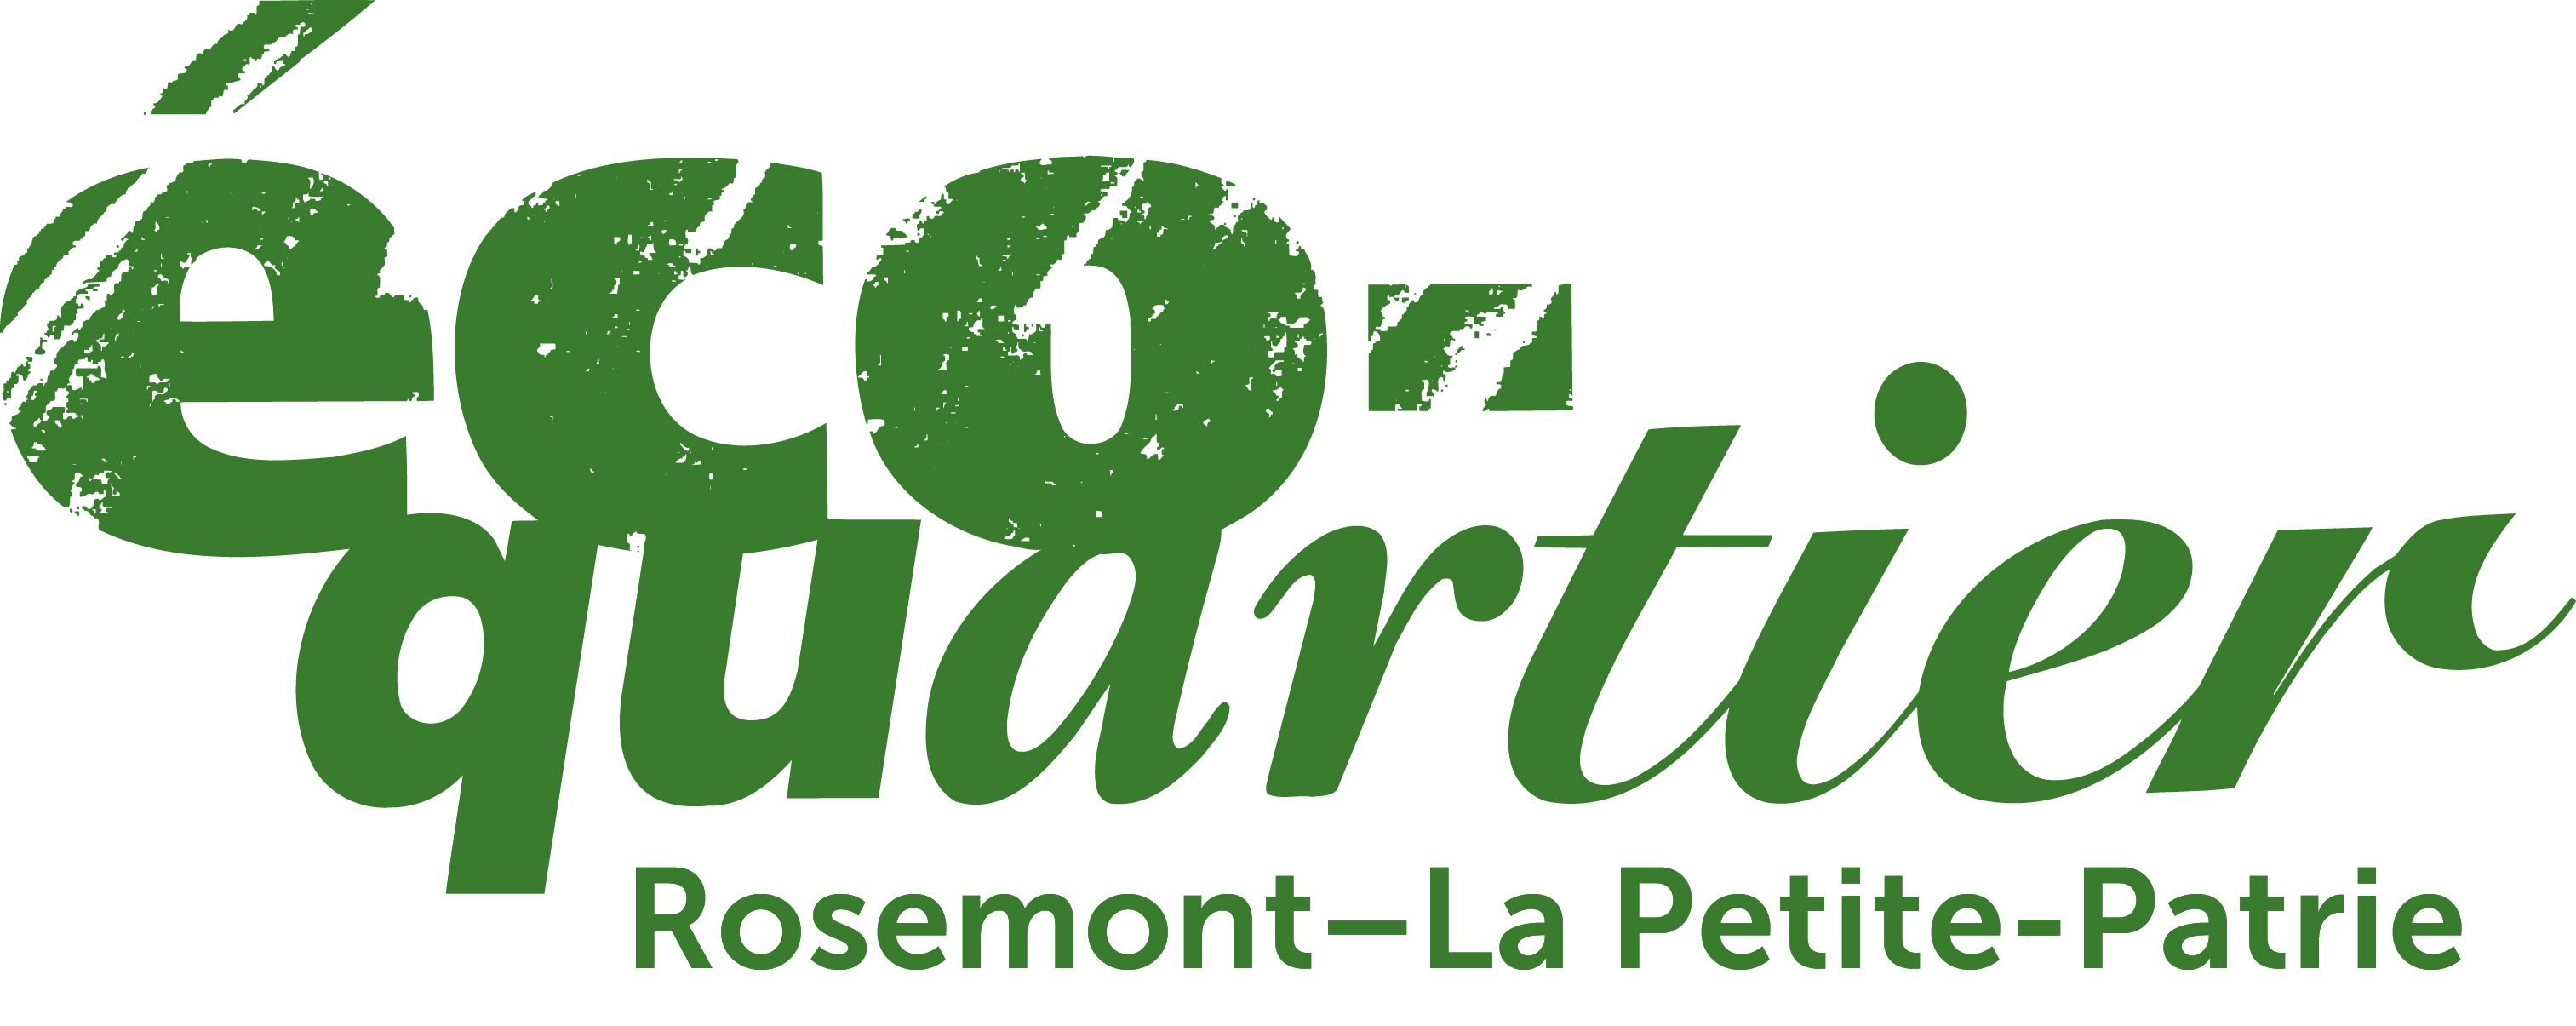 Logo de l'Éco-quartier Rosemont–La Petite-Patrie